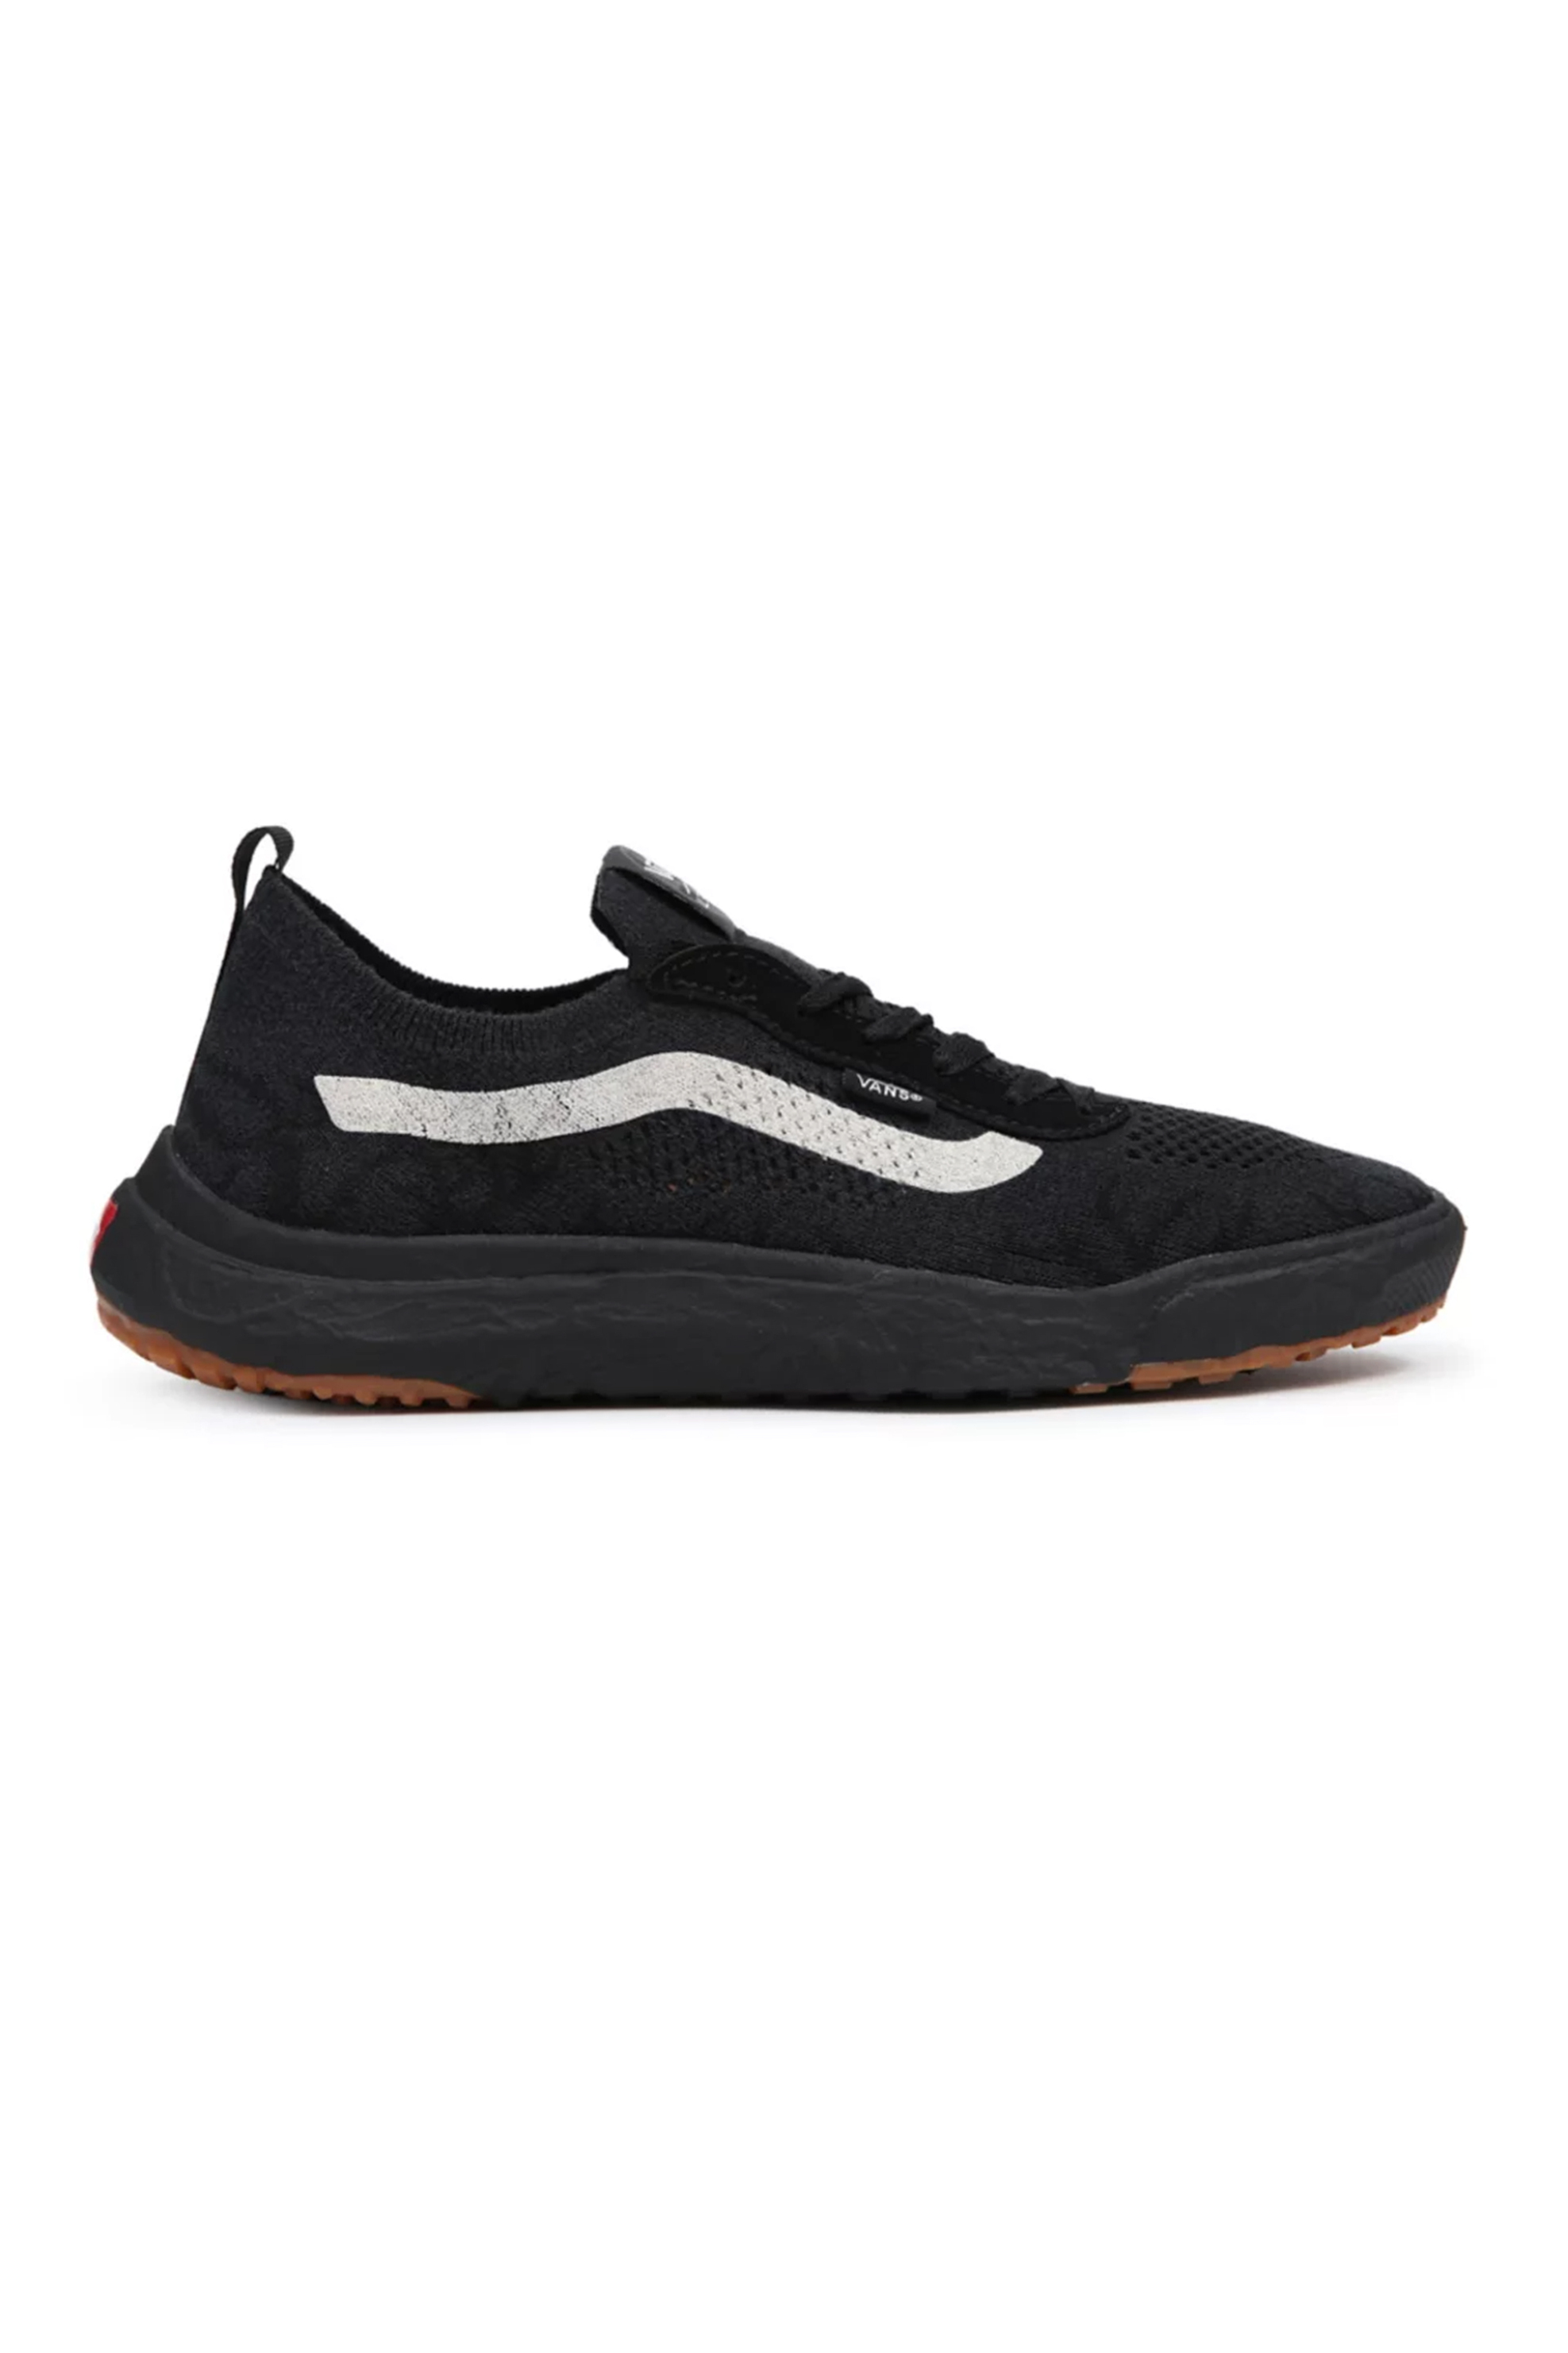 Ανδρική Μόδα > Ανδρικά Παπούτσια > Ανδρικά Sneakers Vans unisex sneakers με κορδόνια "Ultrarange VR3" - VN0A4BXBH7I1 Μαύρο